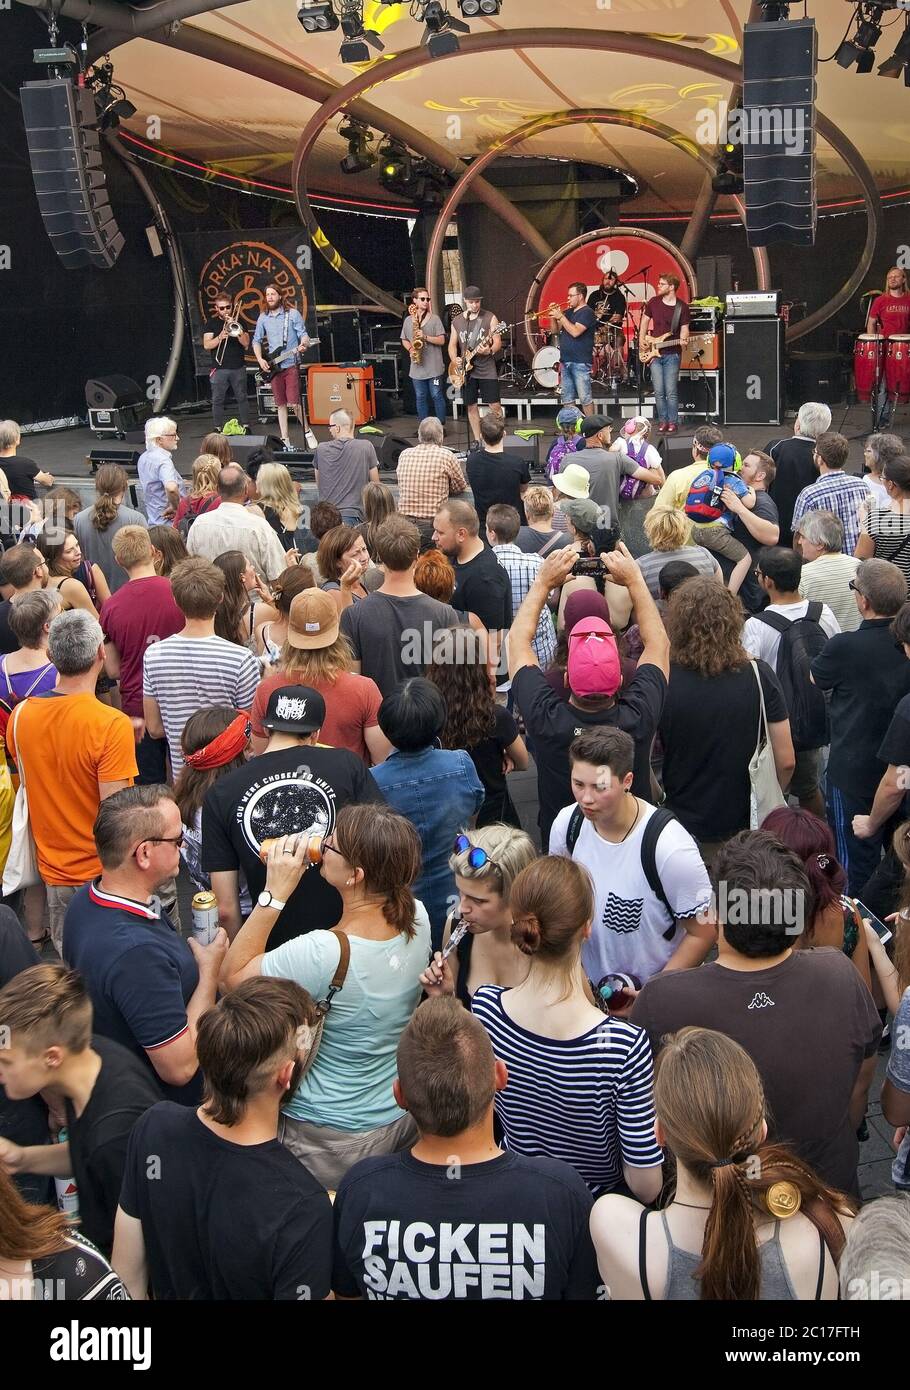 Beaucoup de gens par le festival de musique Bochum Total, Bermudadreieck, Bochum, Ruhr, Allemagne, Europe Banque D'Images